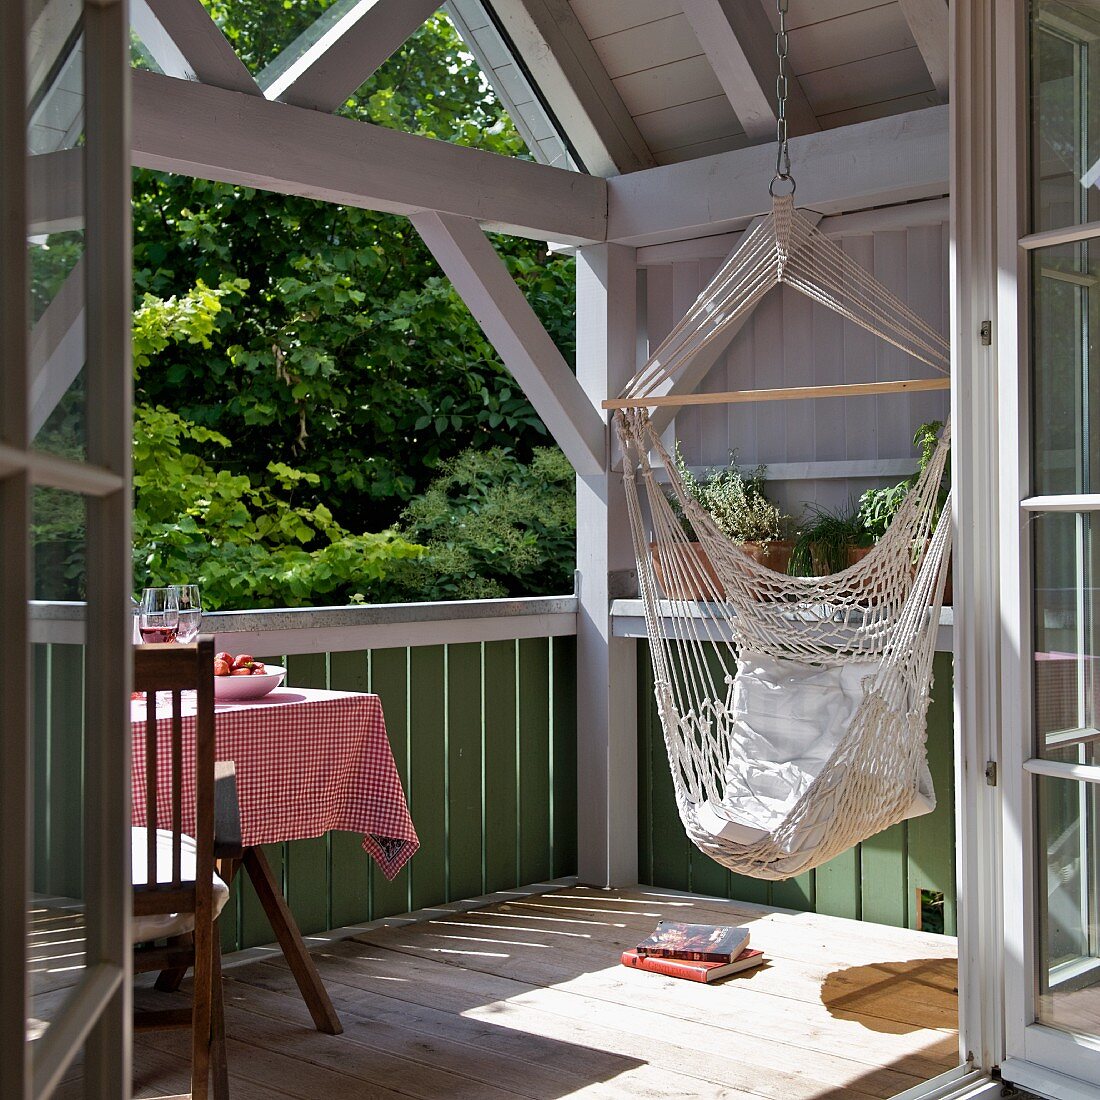 Chillen in der Hängematte - Blick durch offene Tür auf sonnenbeschienenen Balkon eines Holzhauses